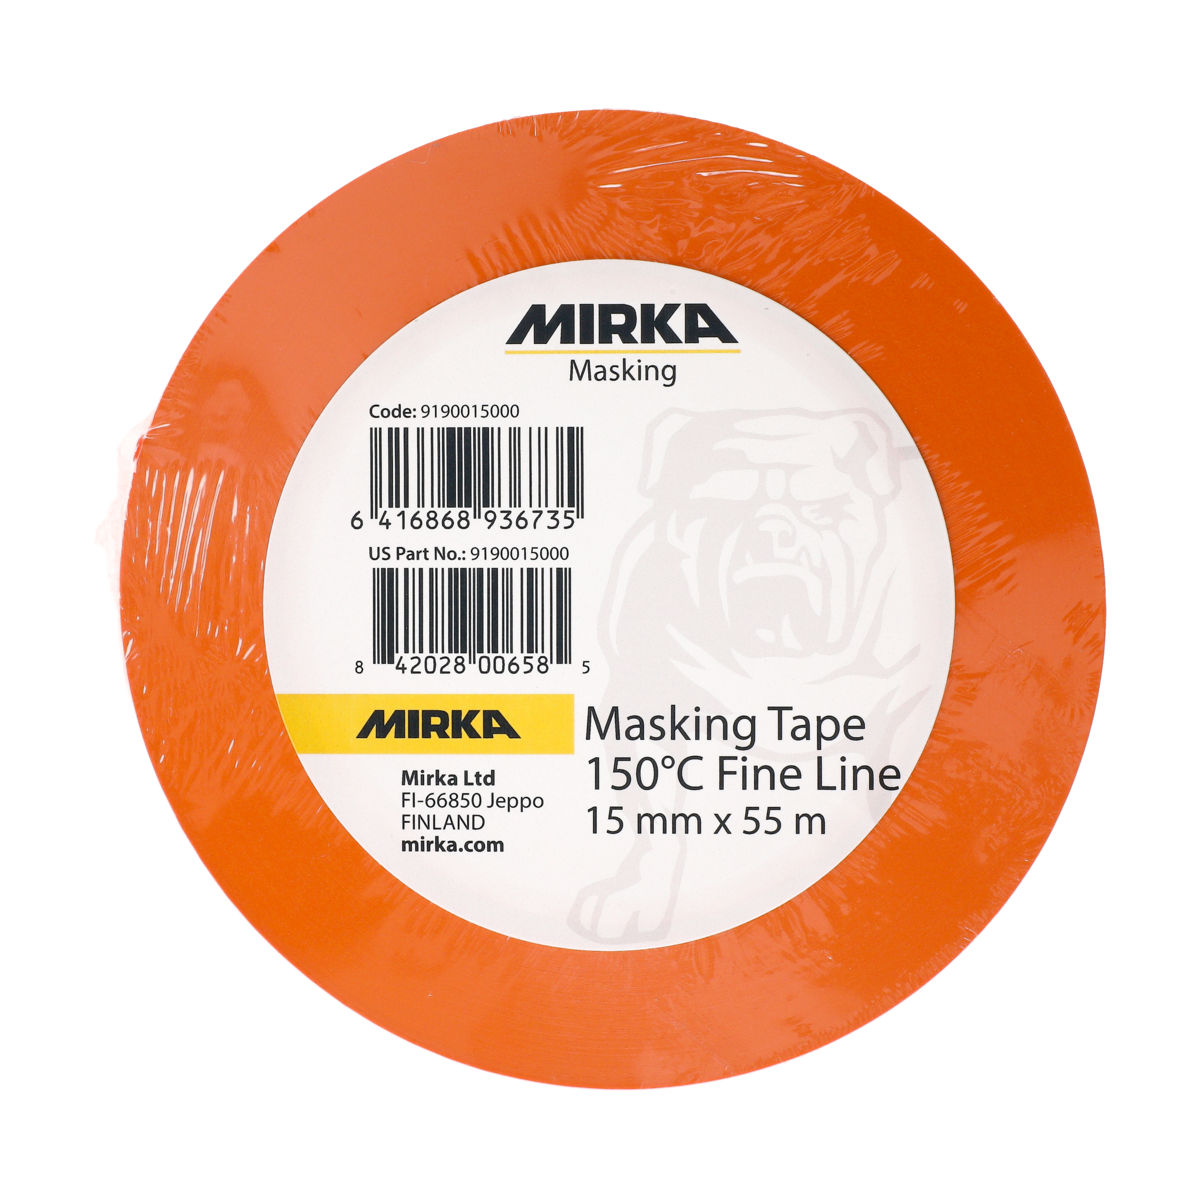 Masking and Tapes - Mirka